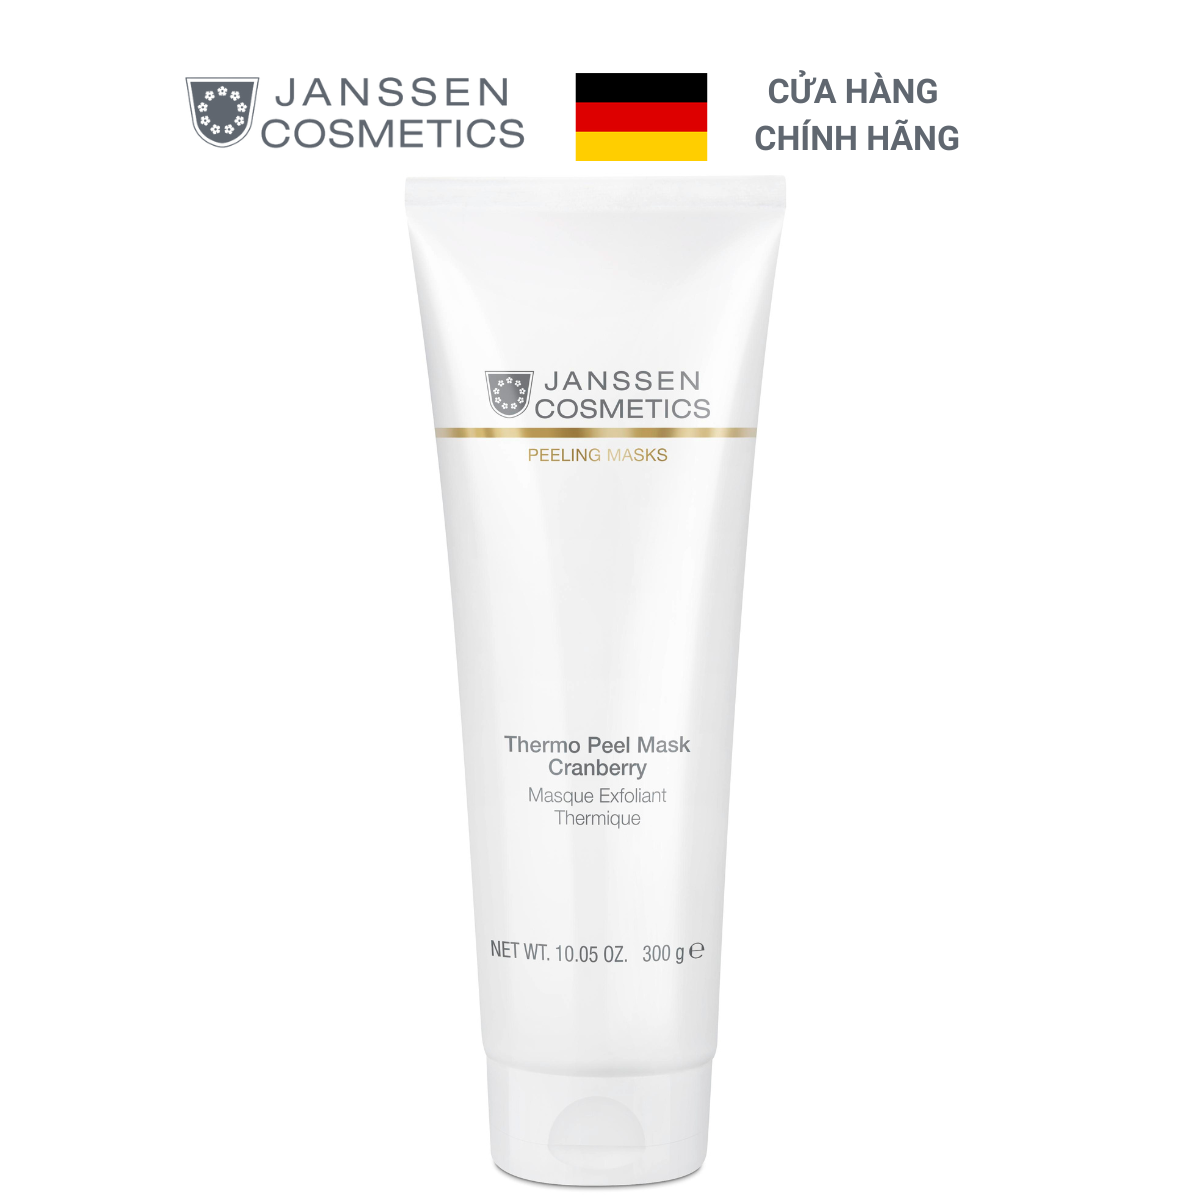  Mặt nạ nhiệt tẩy tế bào chết Janssen Cosmetics Thermo Peel Mask "Cranberry" 300g 